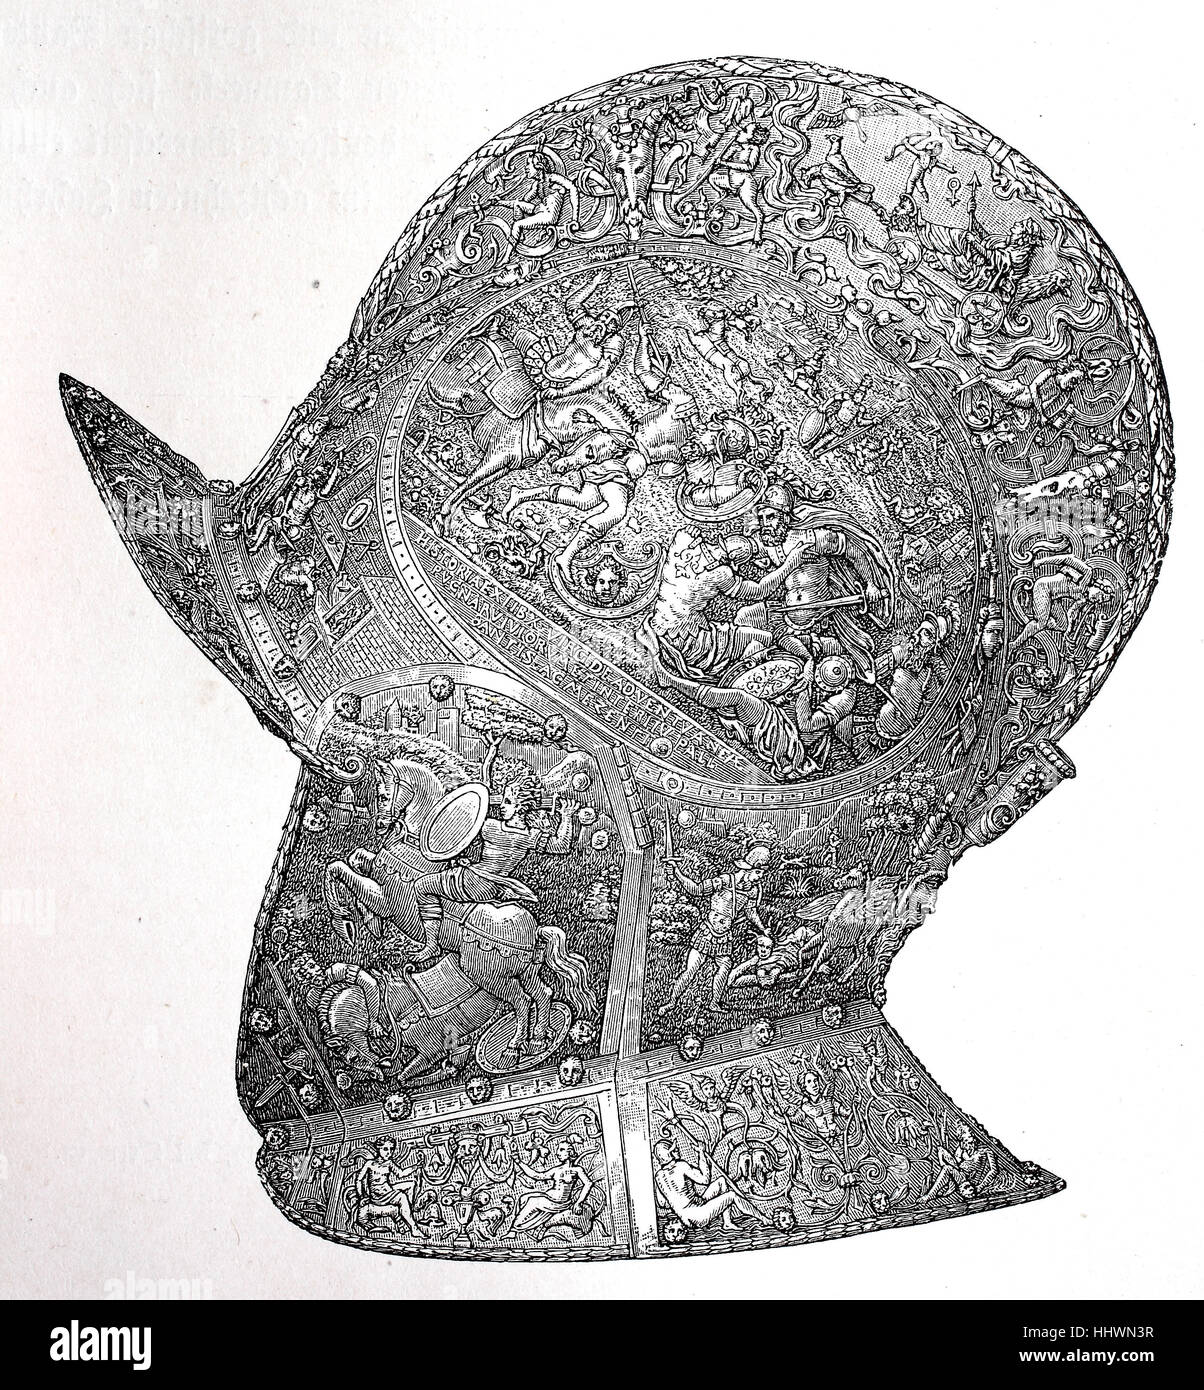 the burgonet helmet or burgundy sallet of Karl V., Renaissance-era, historical image or illustration, published 1890, digital improved Stock Photo